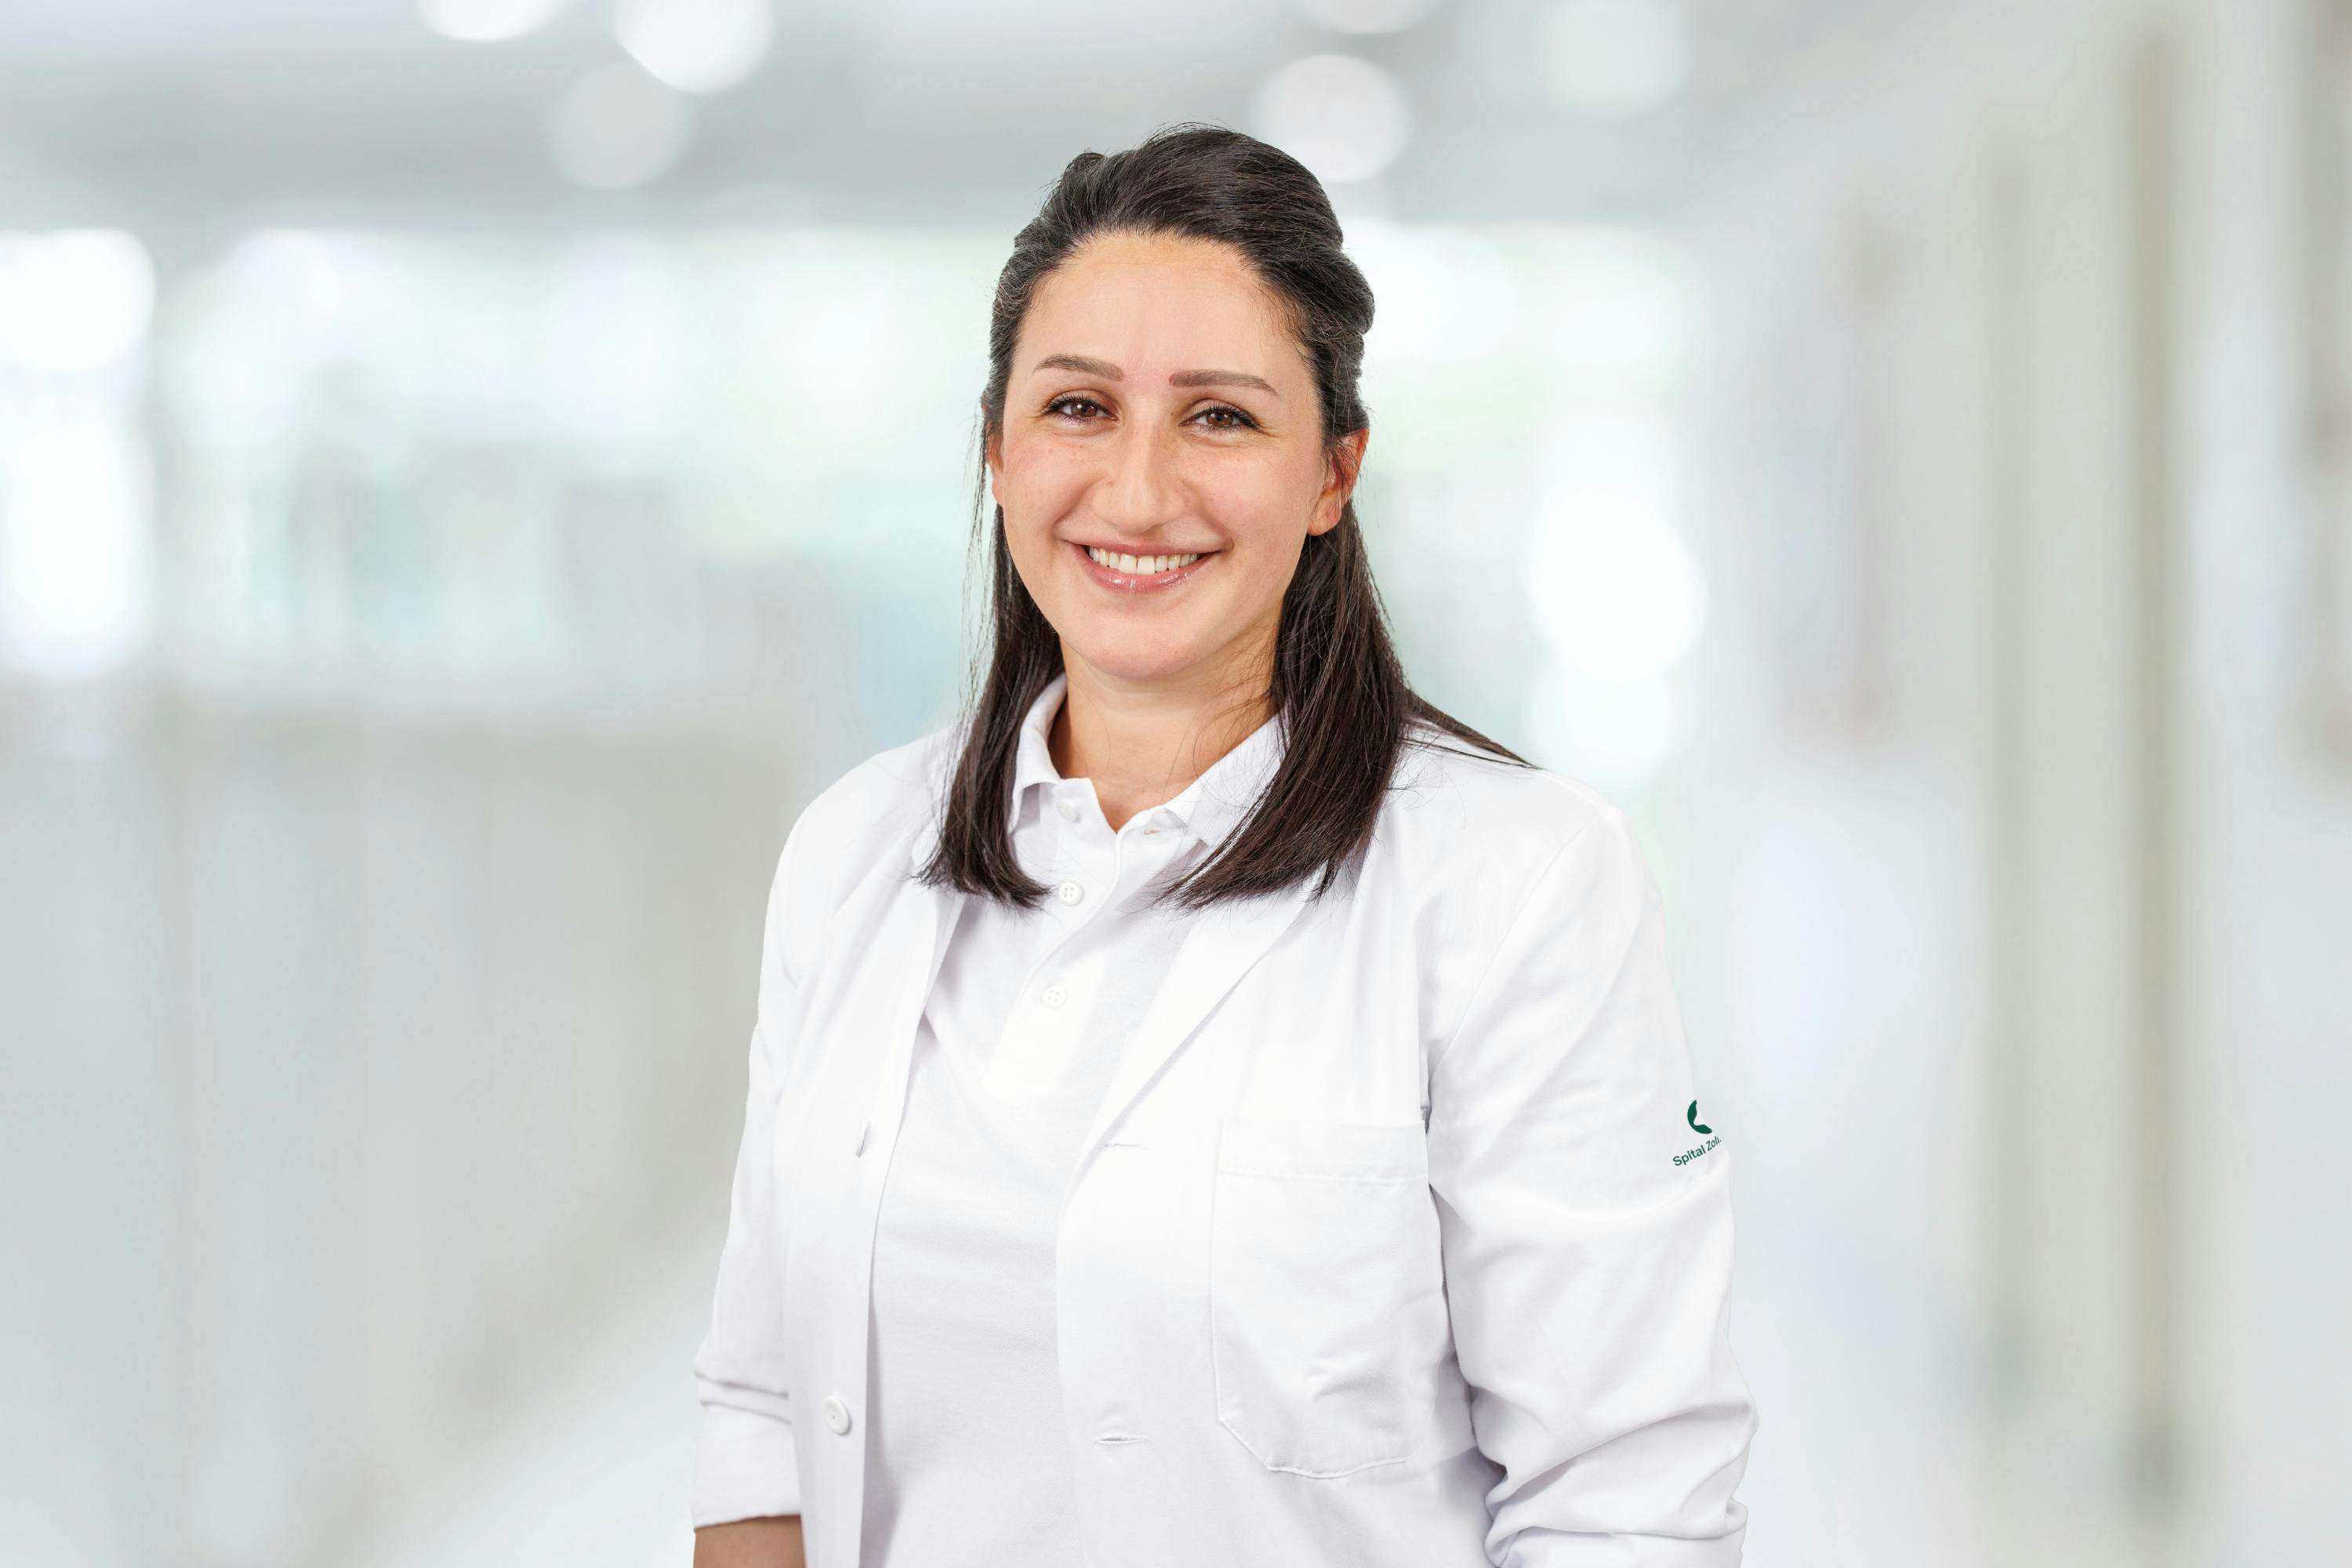 Lächelnde Frau im weißen Arztkittel vor unscharfem Hintergrund.